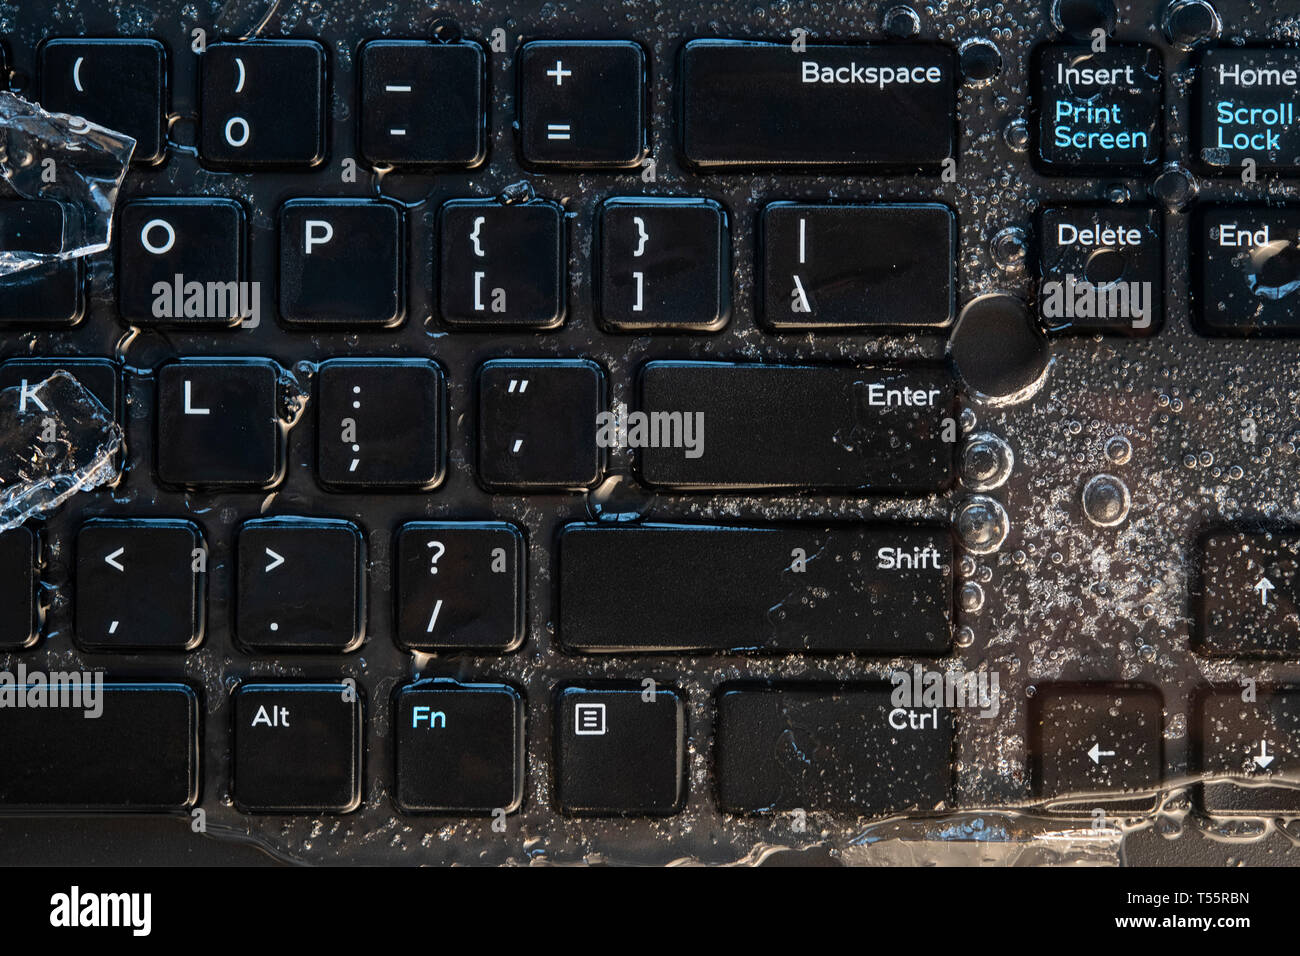 Eis auf der Tastatur des Computers Stockfotografie - Alamy